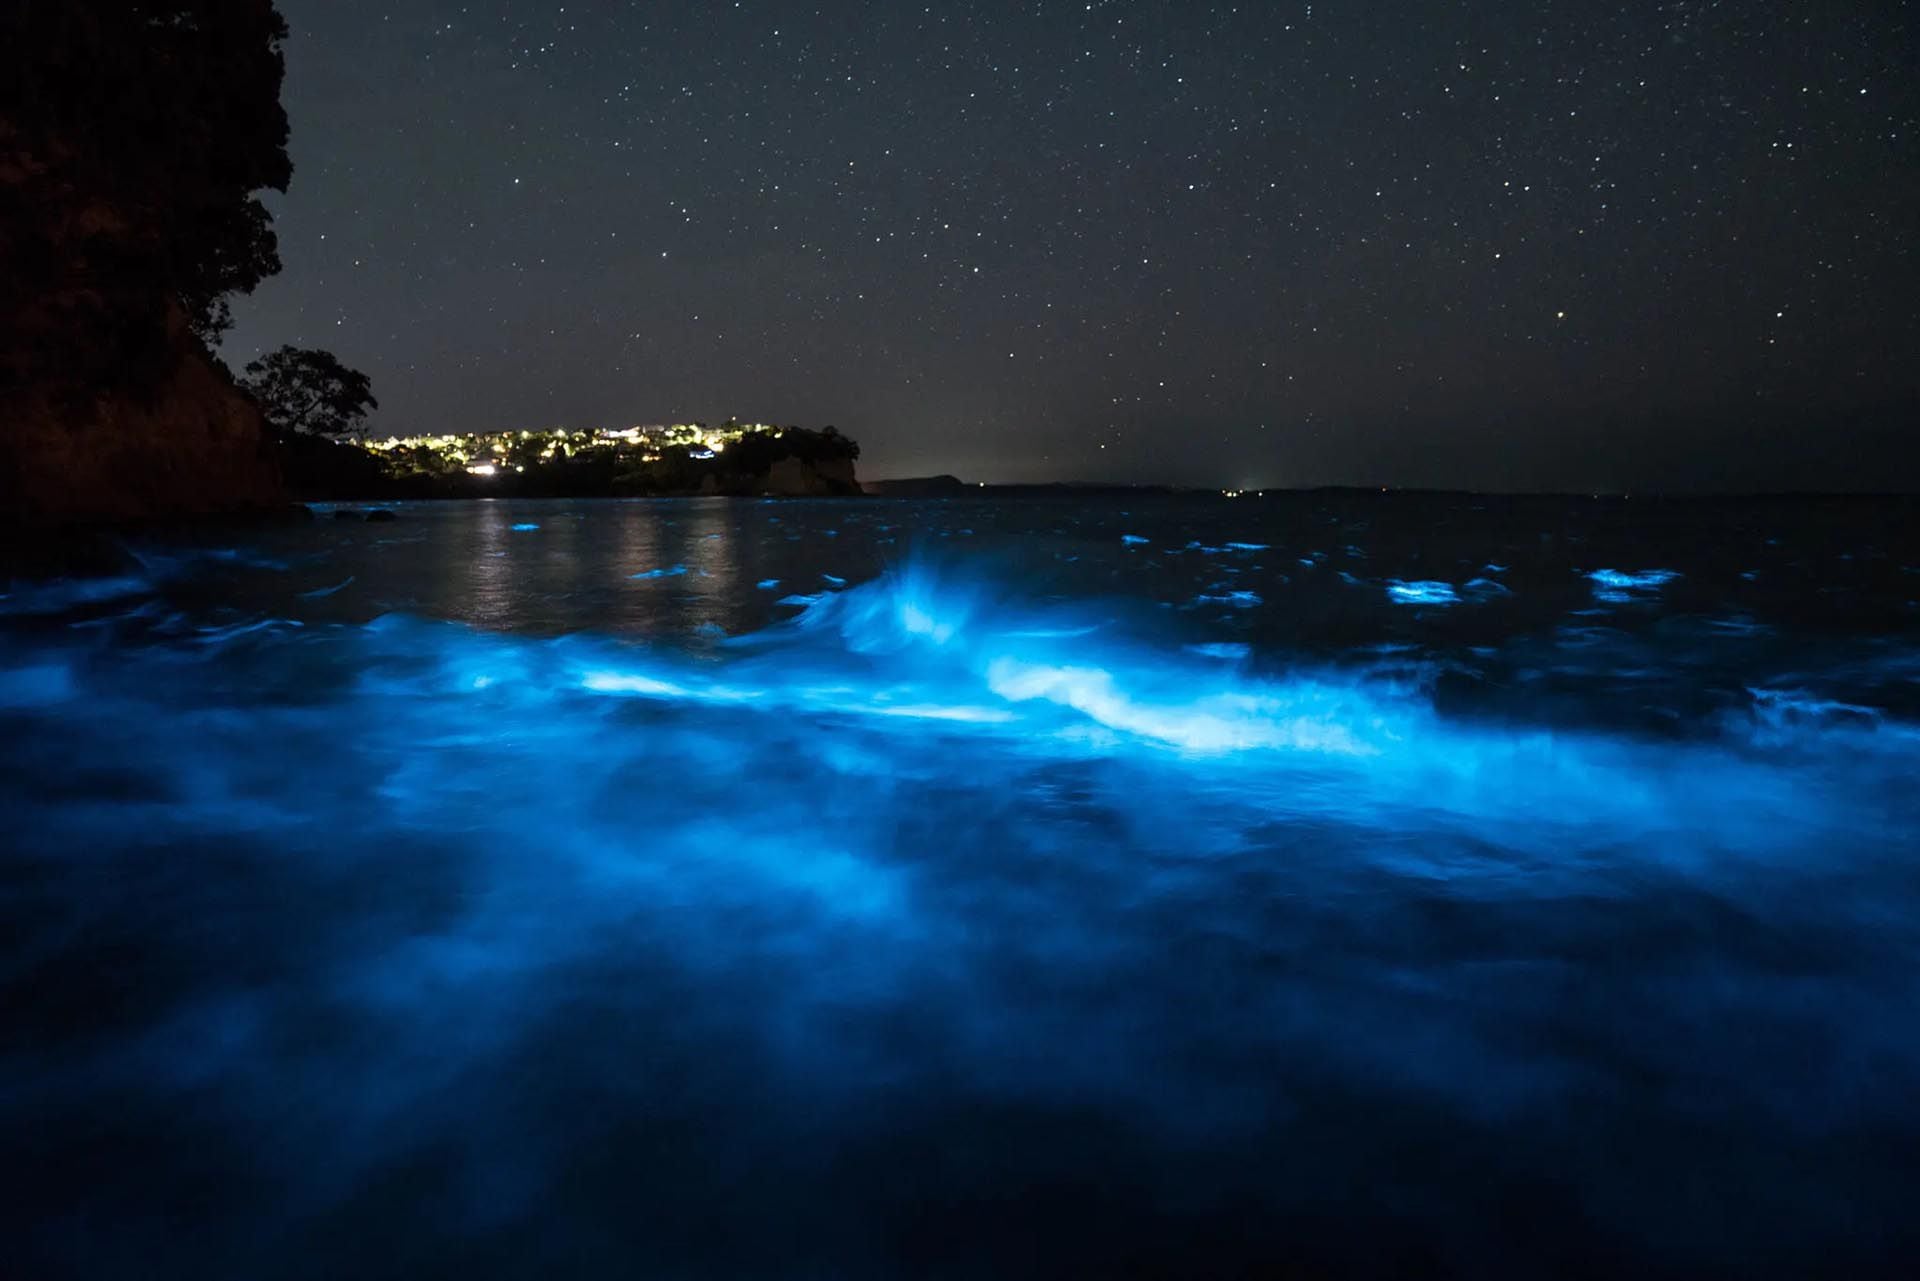 Biolumineszenz in Fotos: So sieht es im Nachtmeer Neuseelands aus - Infobae